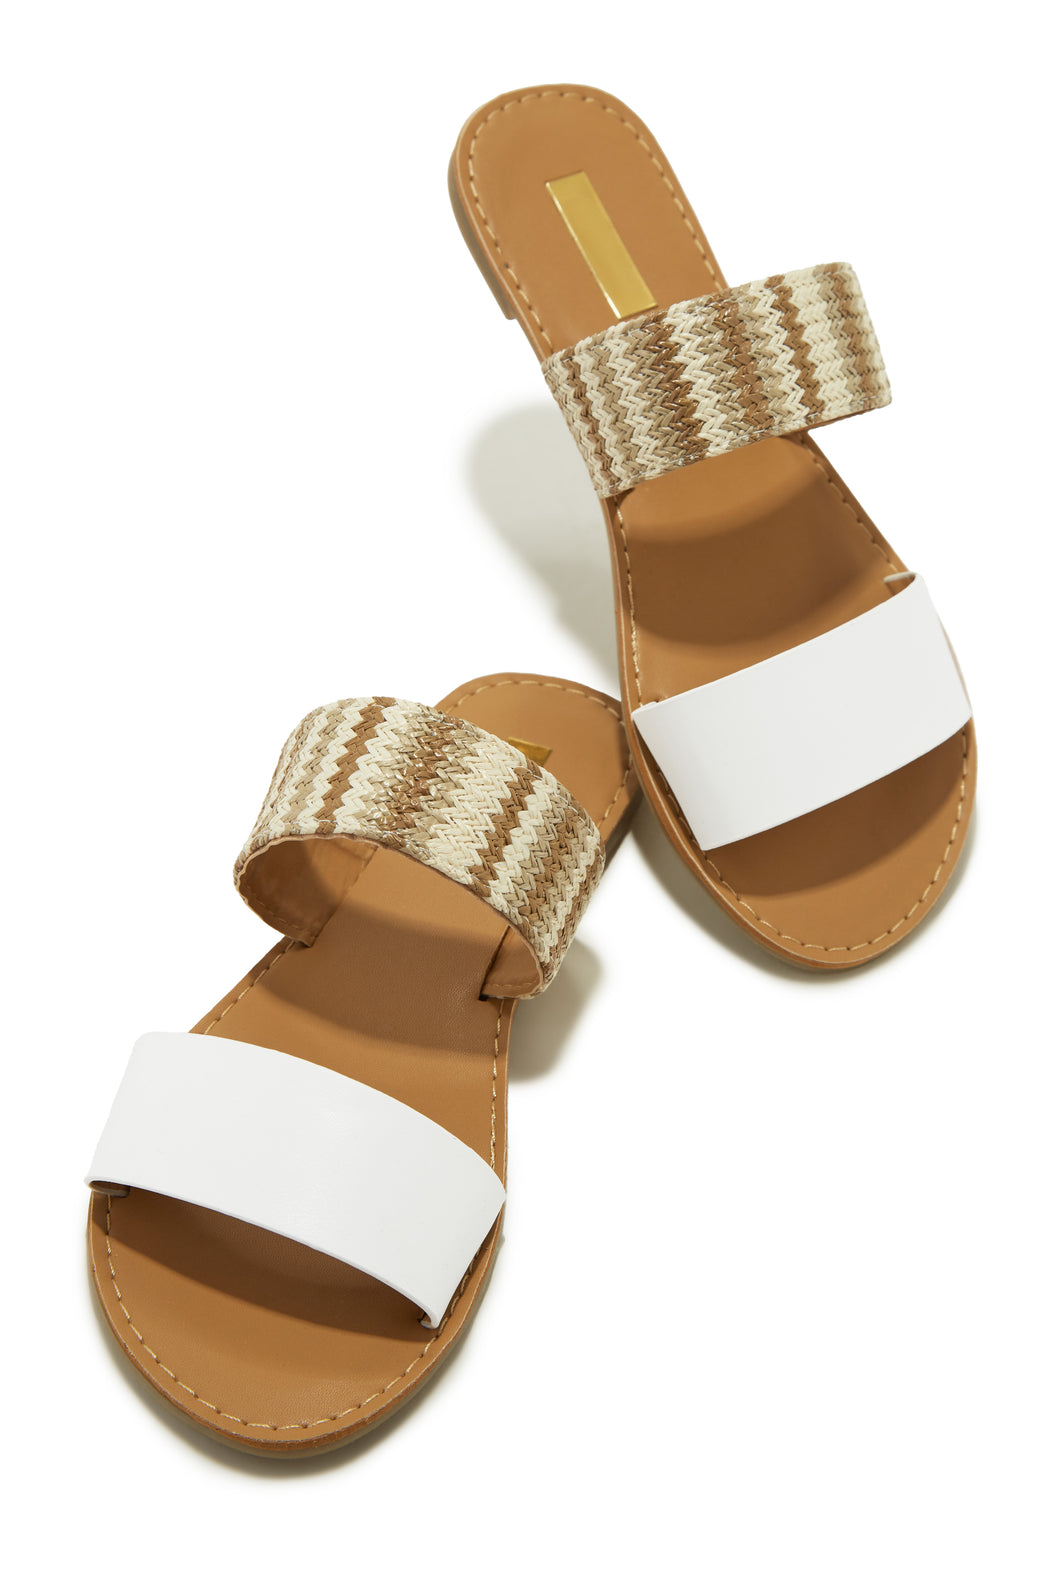 Spring Breaker Flat Slip On Sandals - White